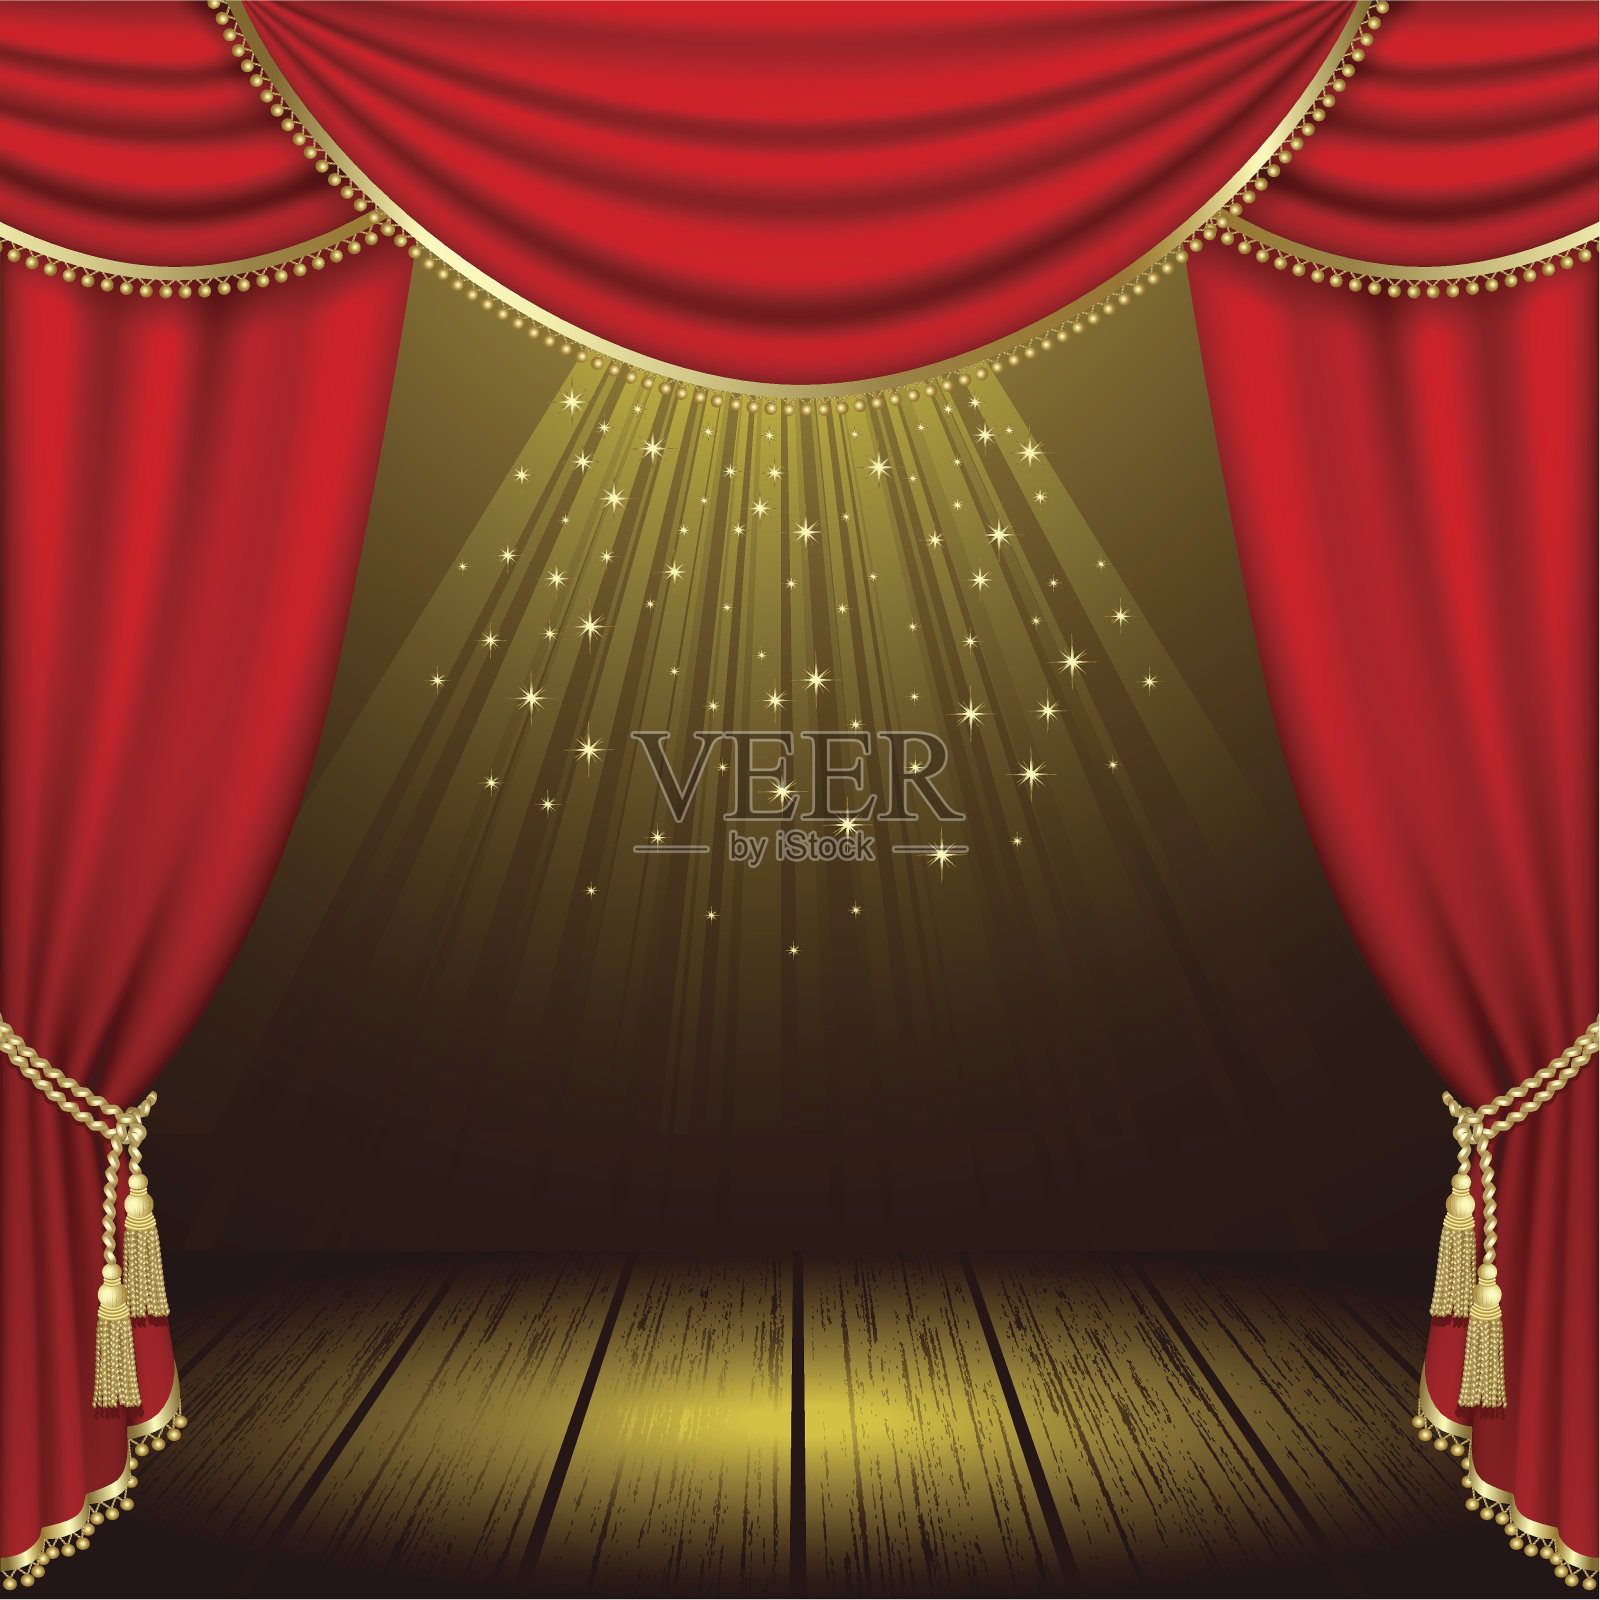 有红色幕布的灯光舞台剧院插画图片素材